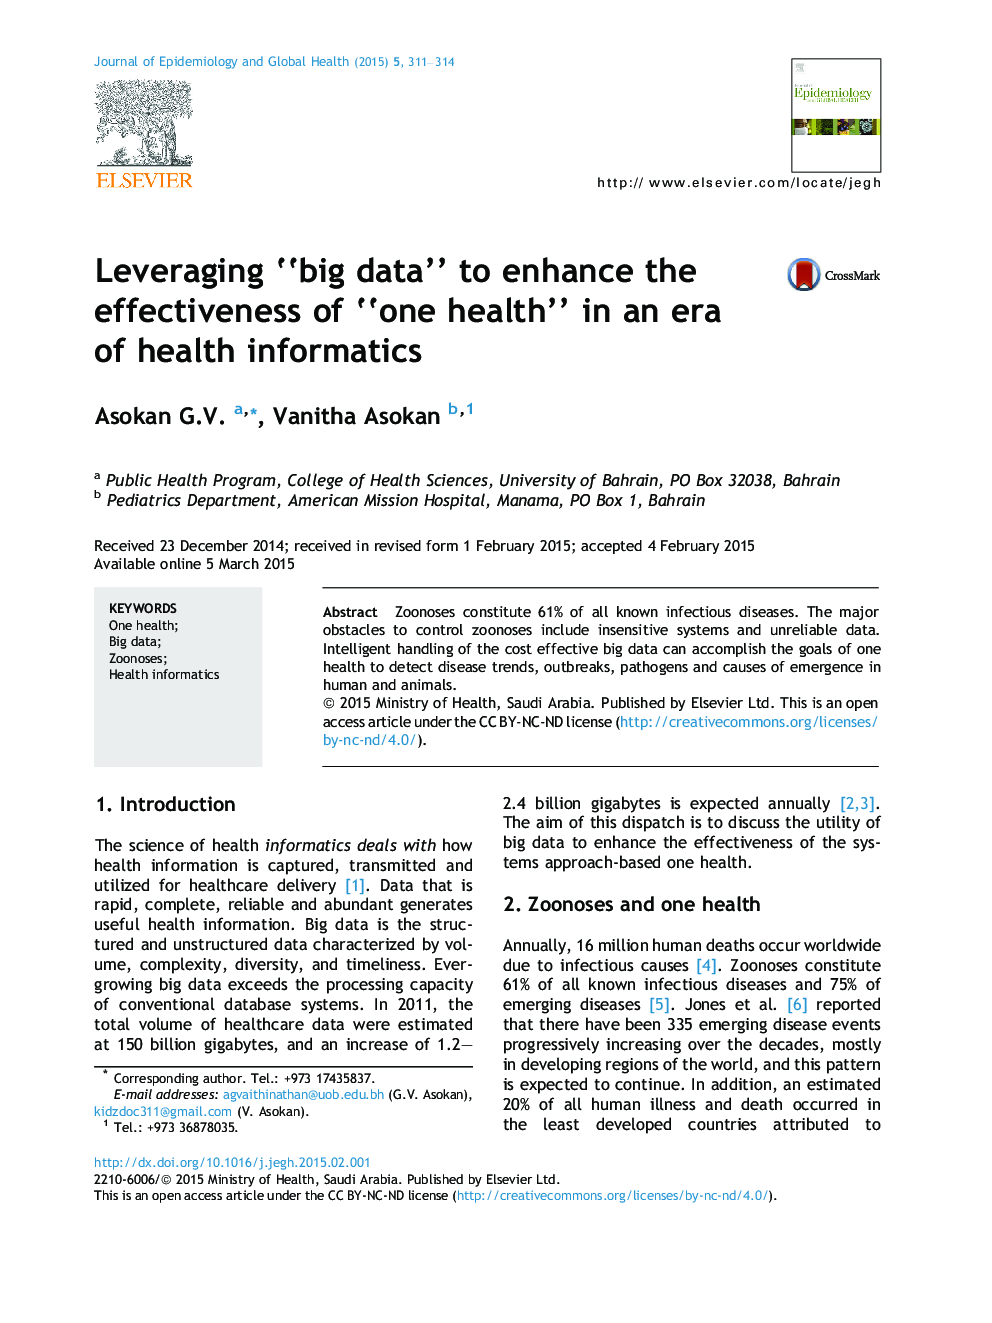 استفاده از "داده های بزرگ" برای افزایش اثربخشی "یک سلامت" در عصر اطلاعاتی پزشکی